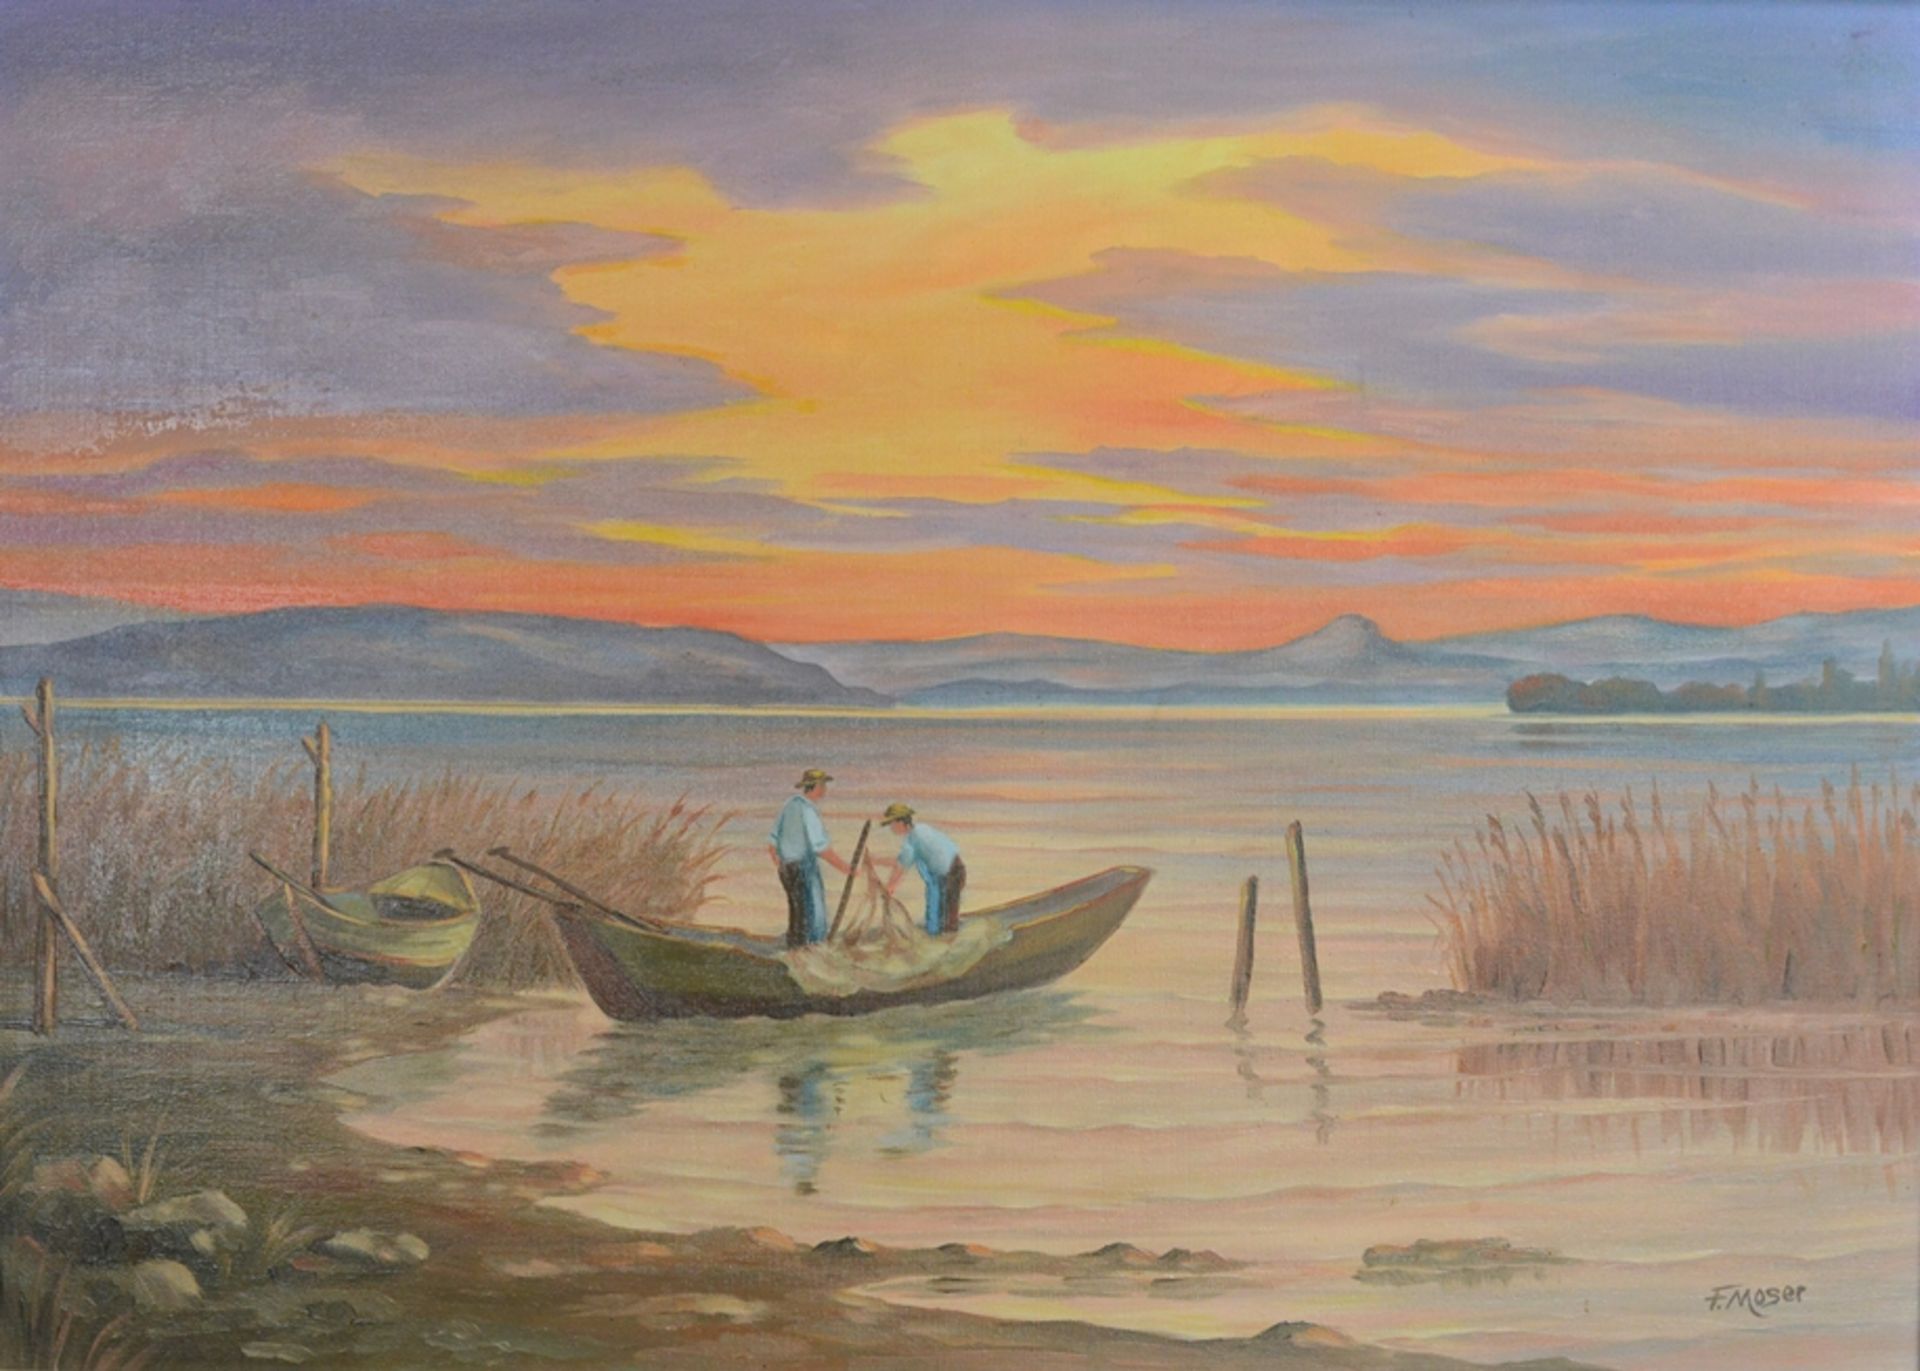 Moser, F. (20. Jahrhundert) "Morgenstimmung" auf der Reichenau, mit zwei Fischern im Boot, rechts u